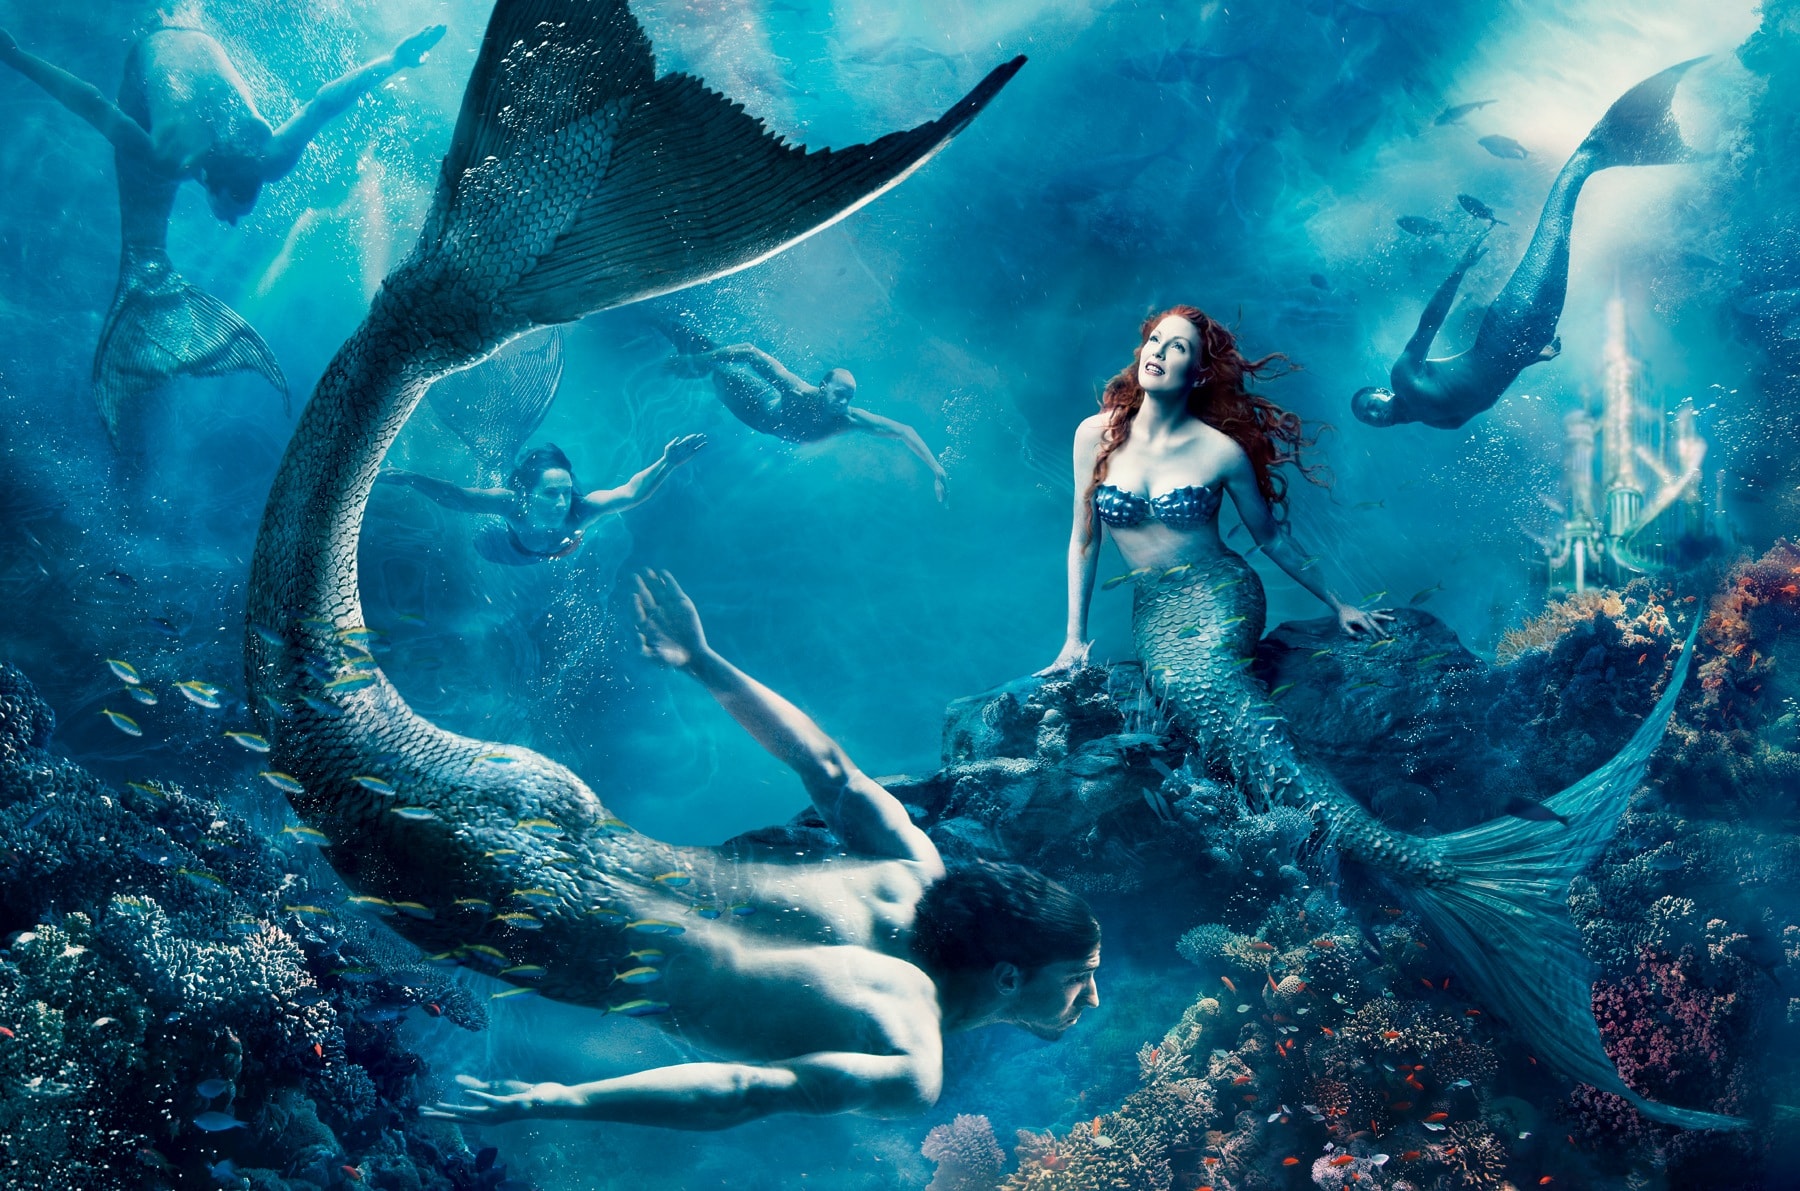 julianne-moore-michael-phelps-mermaid